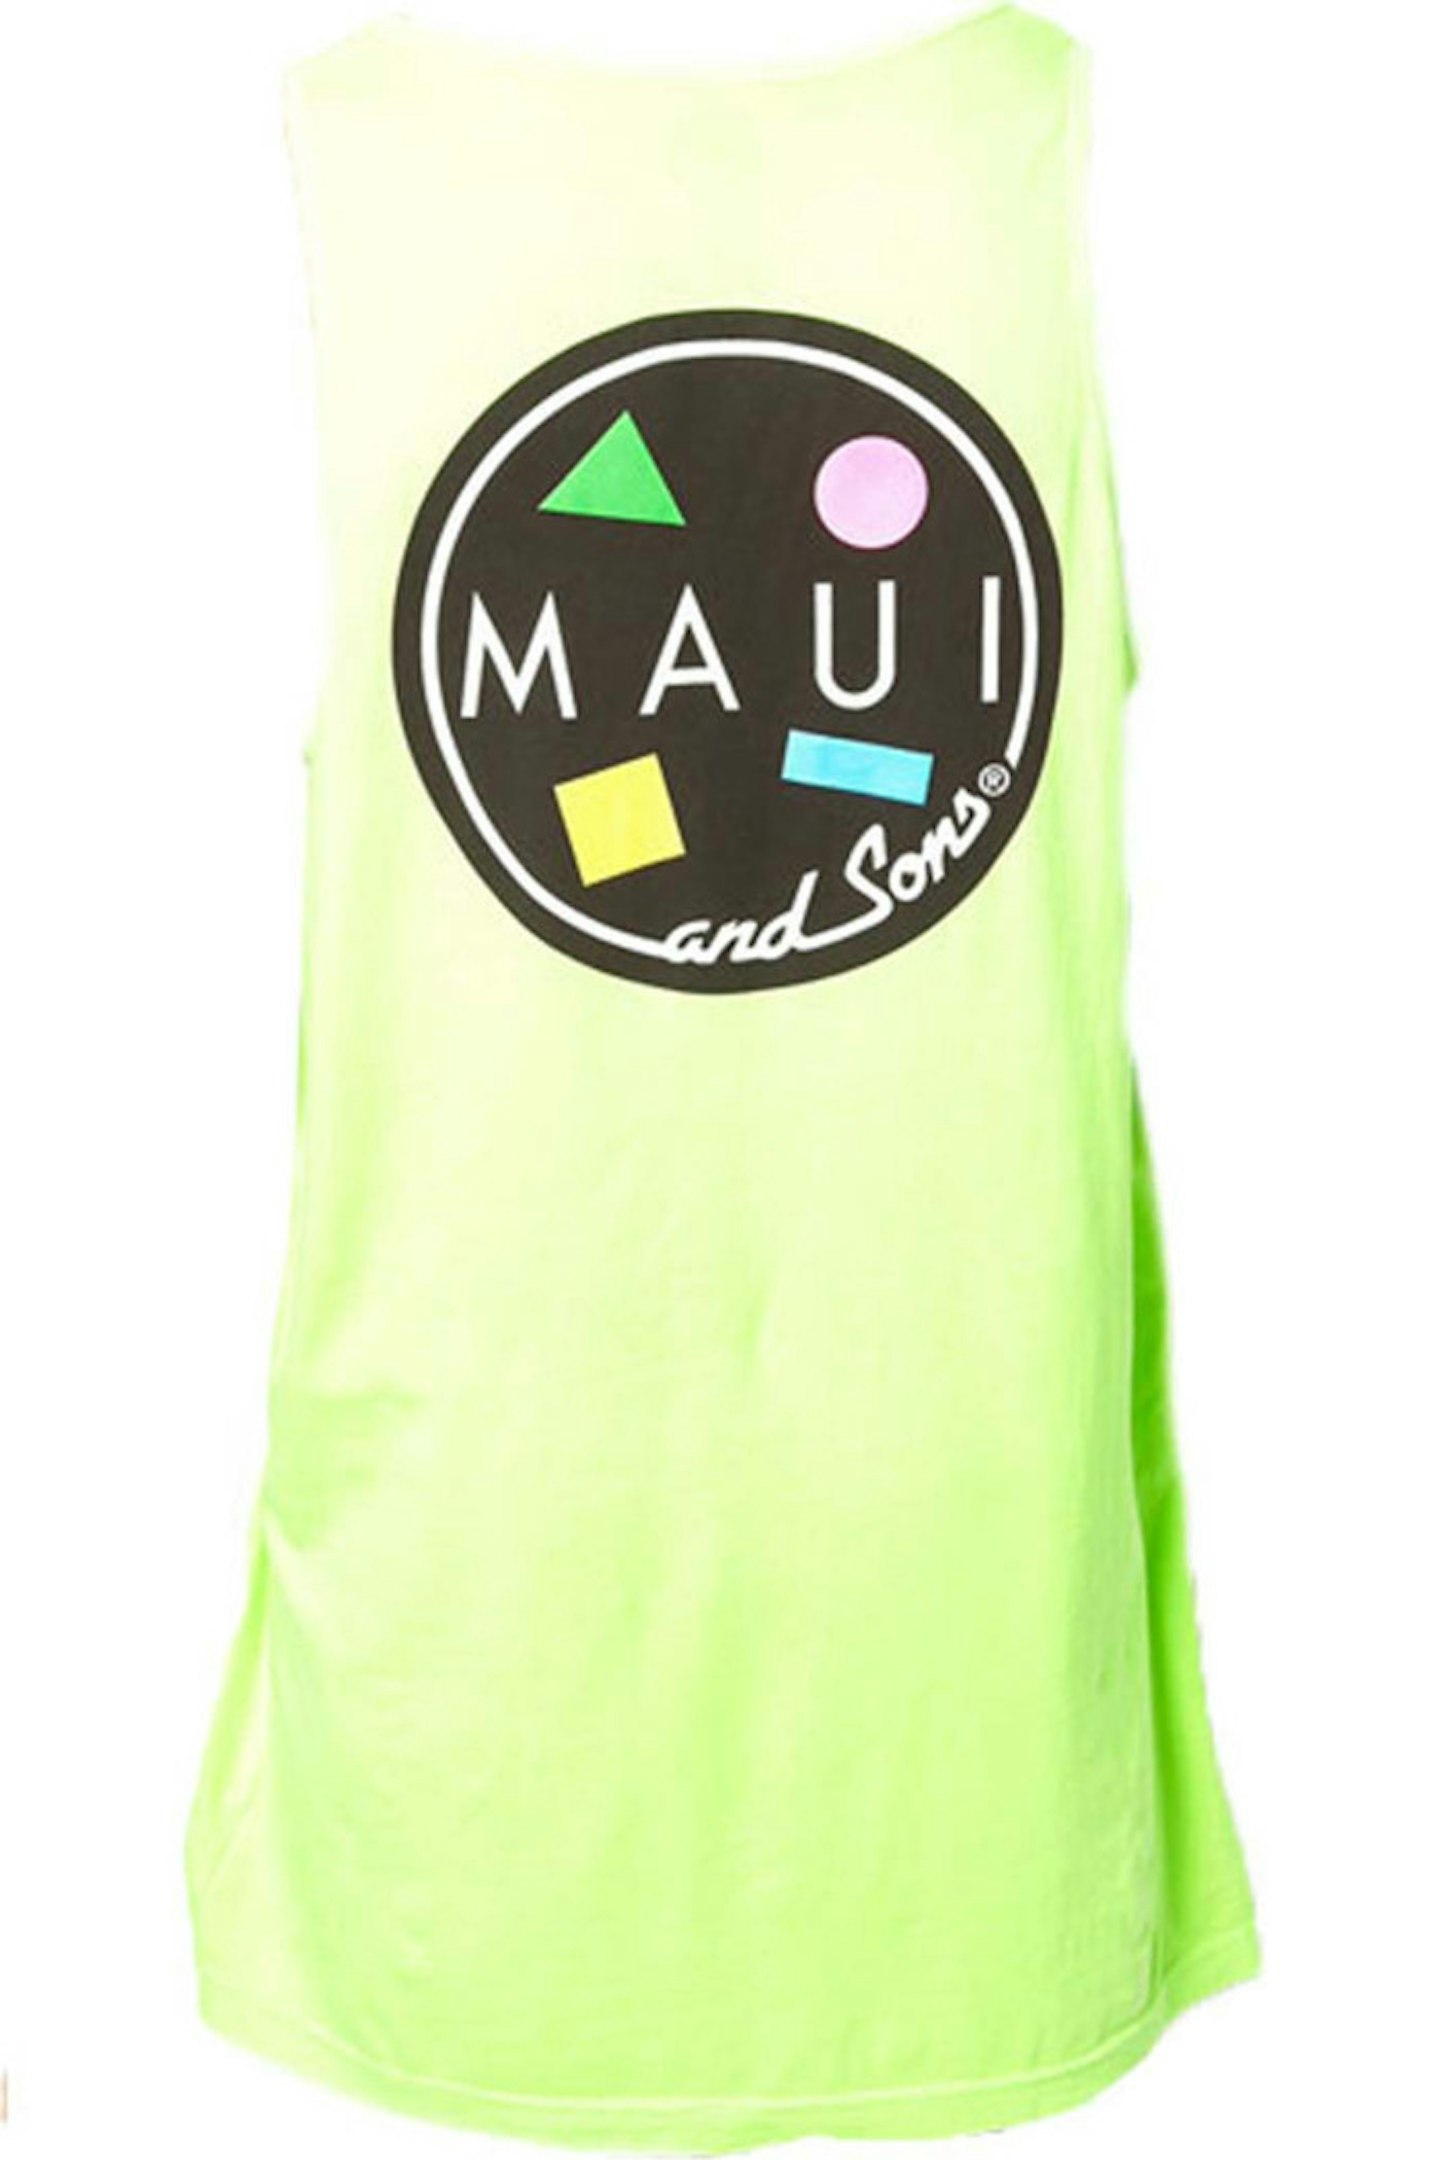 34. Maui Sons